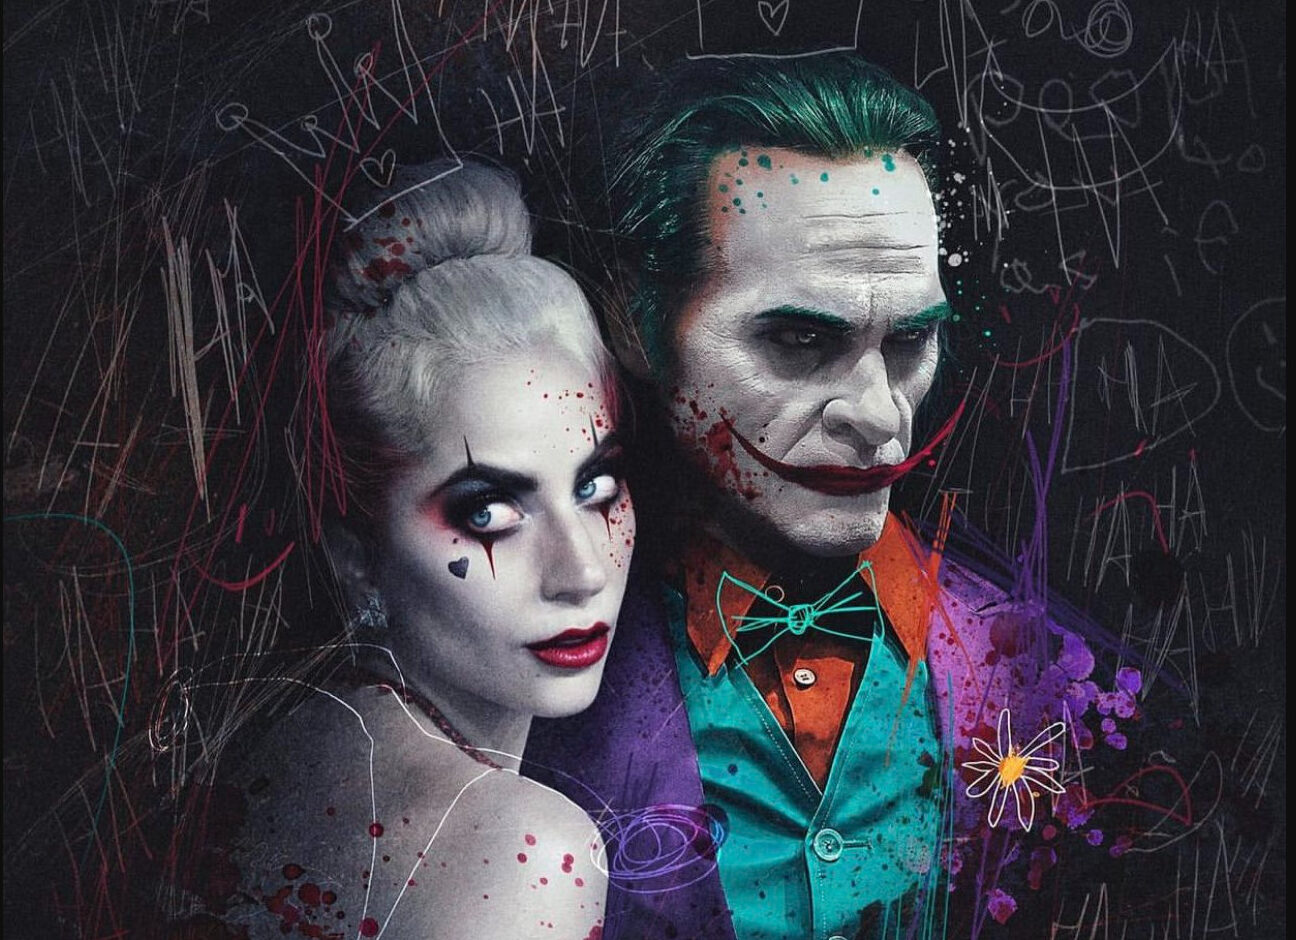 Joker 2: Photos, Cast, Plot, Release Date